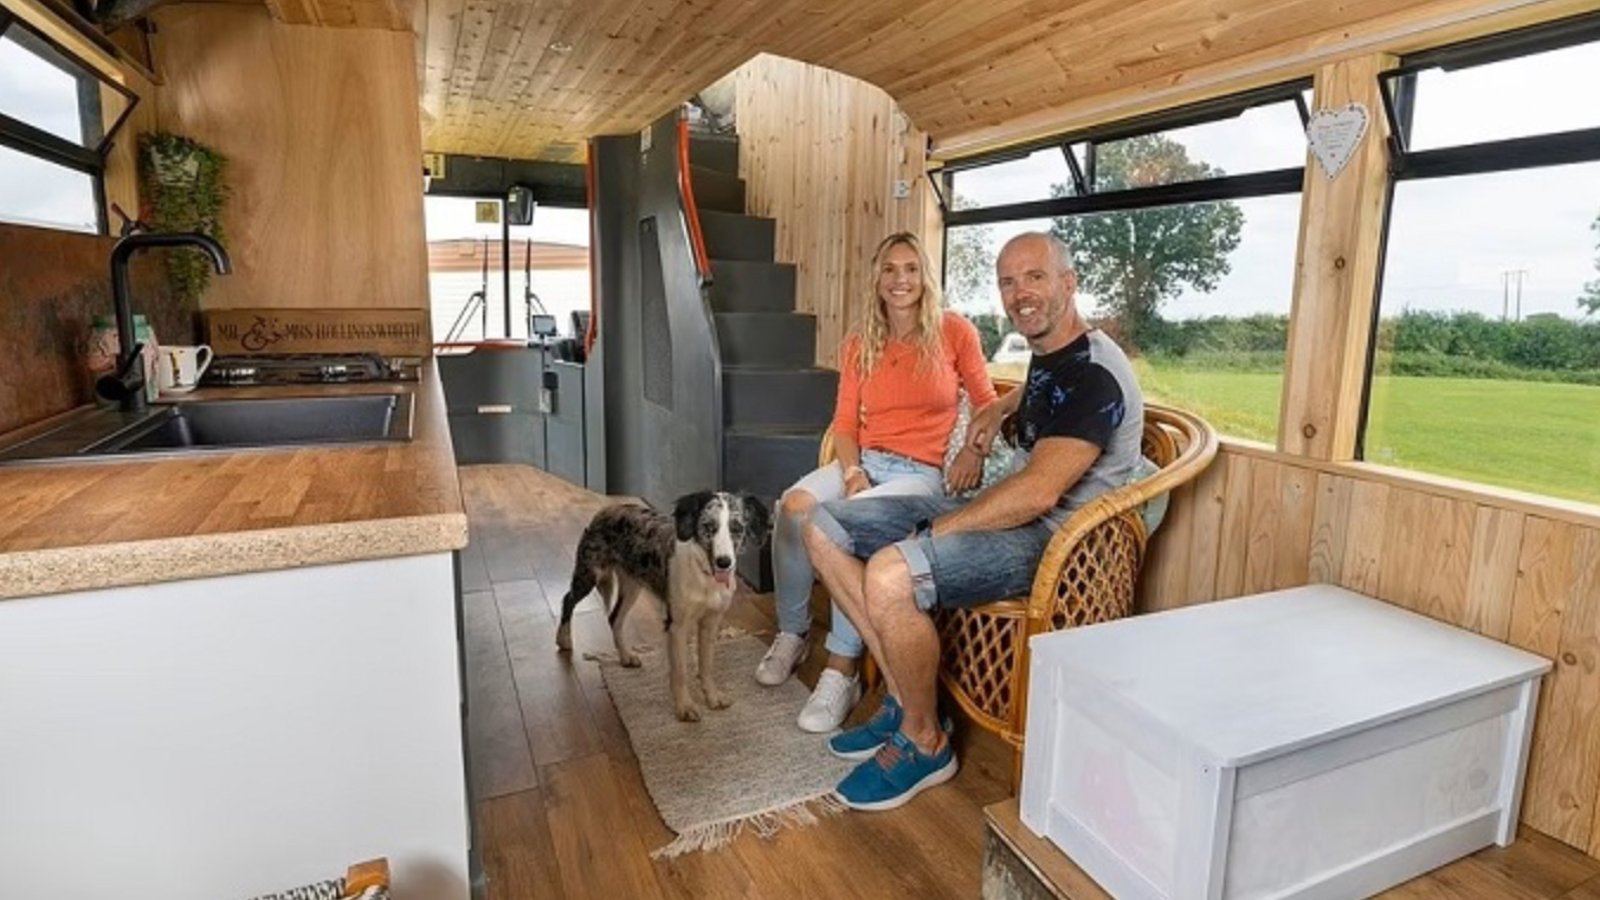 Ce couple a transformé un bus anglais pour environ 28 000 $ afin d’y vivre, travailler et voyager